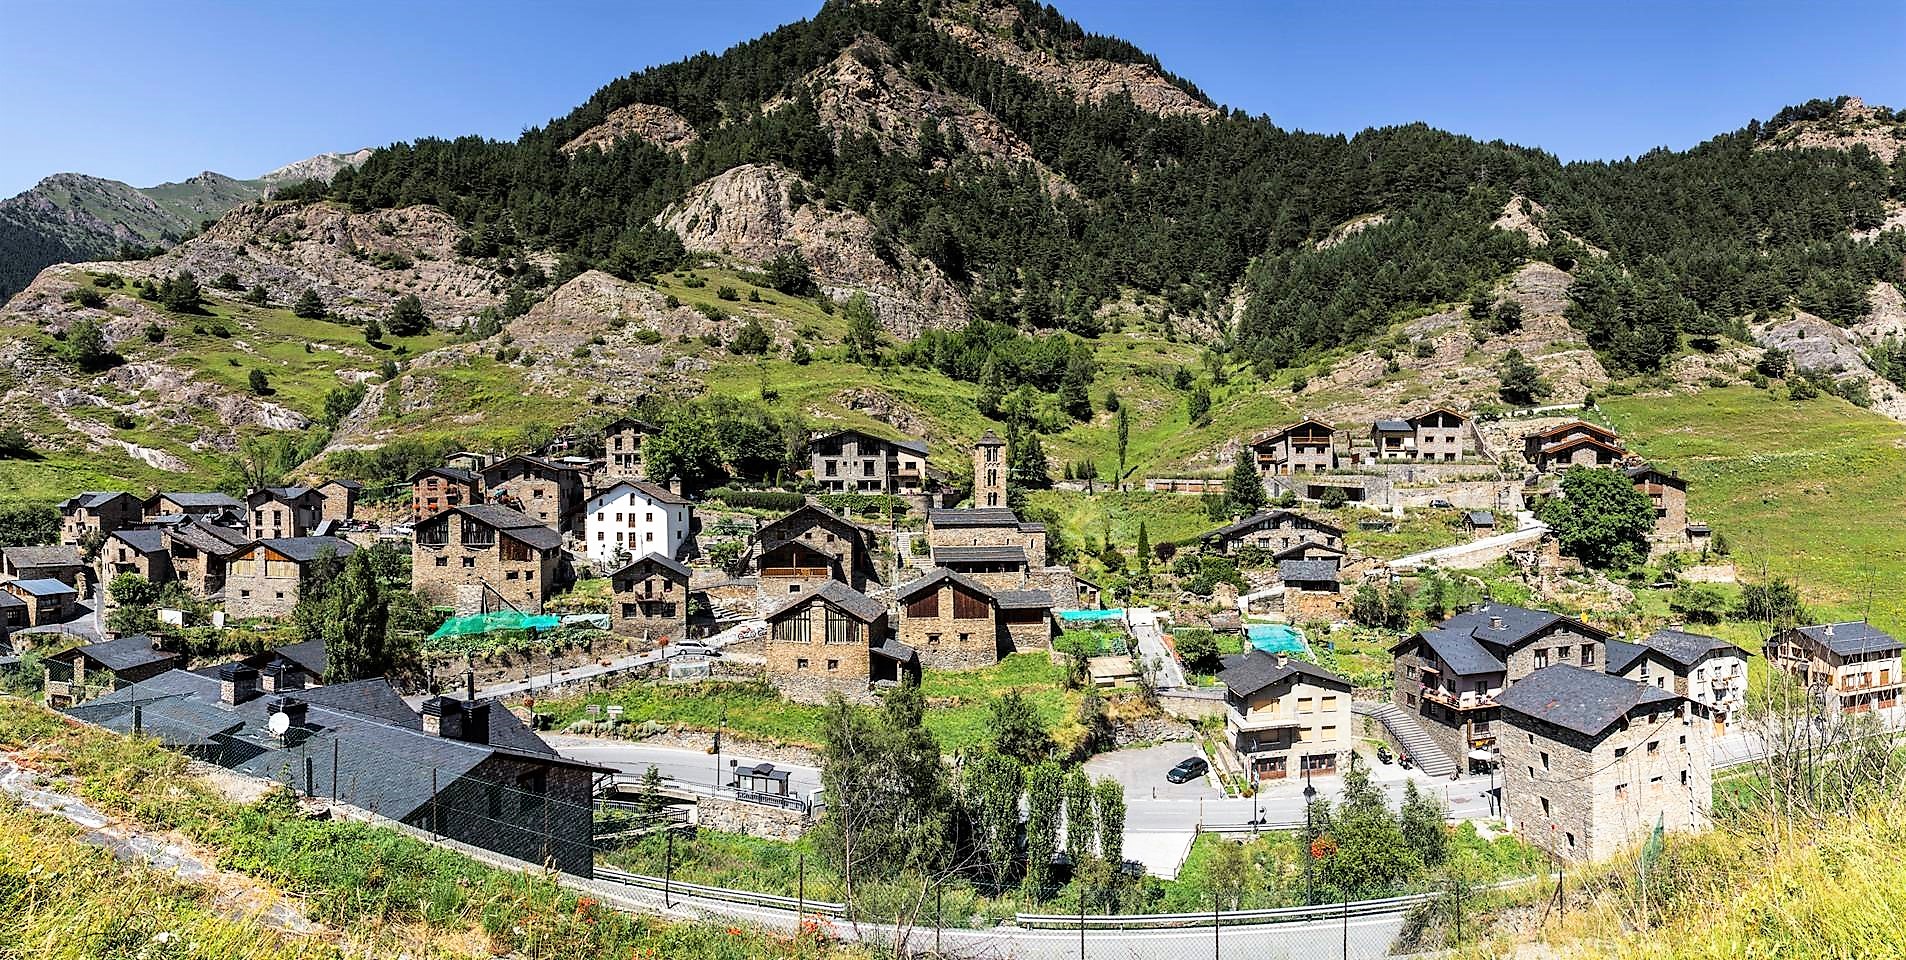 La Massana - Arinsal - Pal los mejores Restaurantes de Arinsal Pal y La Massana en el Principado de Andorra auténtica gastronomía Andorrana